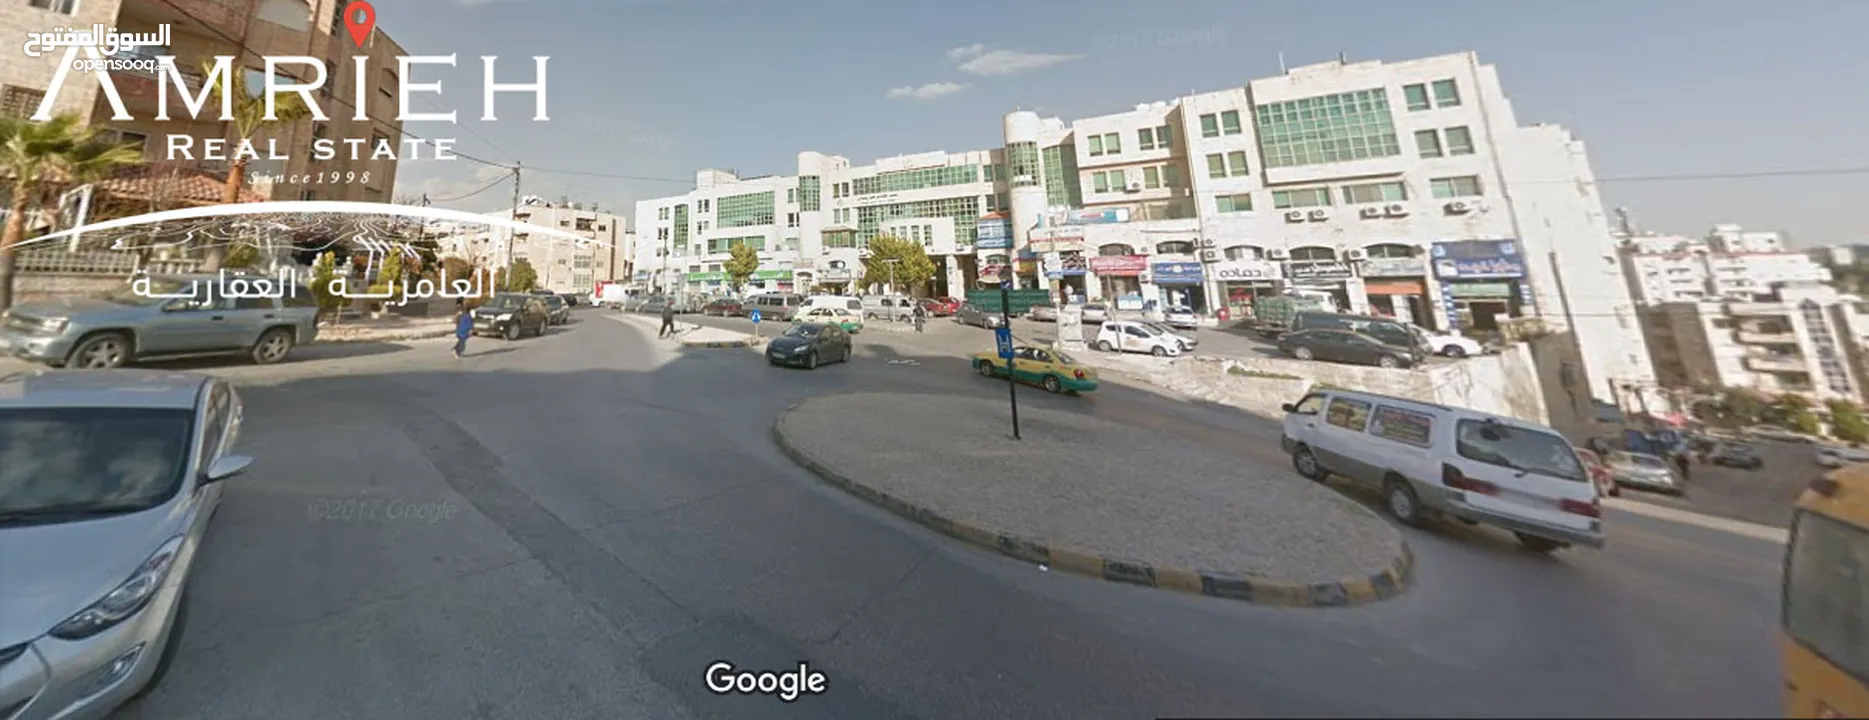 ارض سكنية للبيع في عرجان / قرب اسواق المحمل عرجان (اسكان)